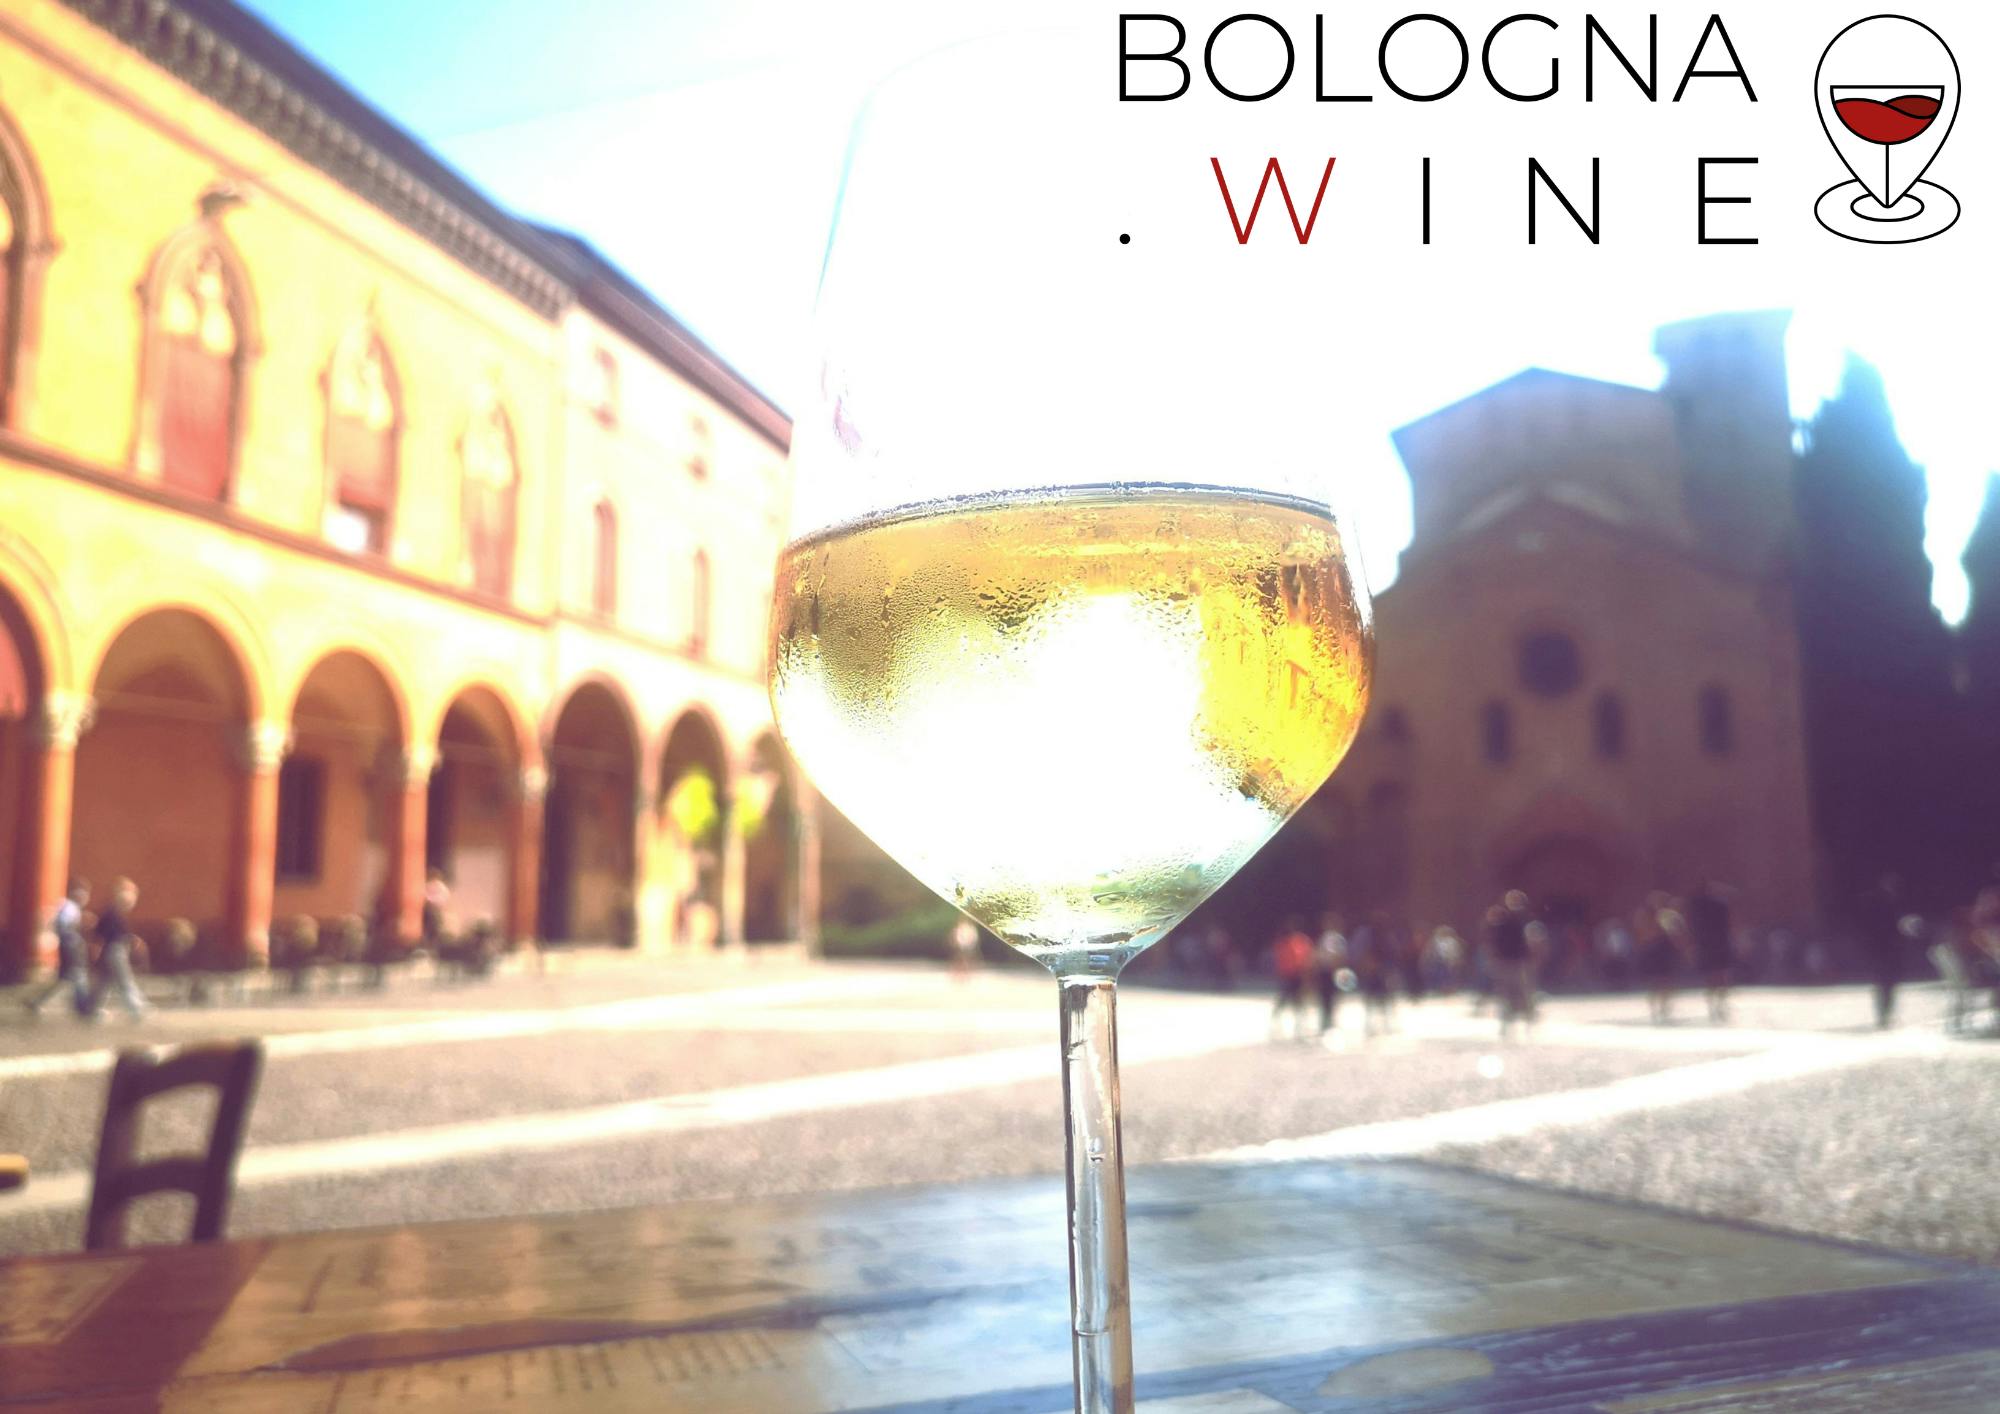 Wijnwandeling van twee uur door Bologna